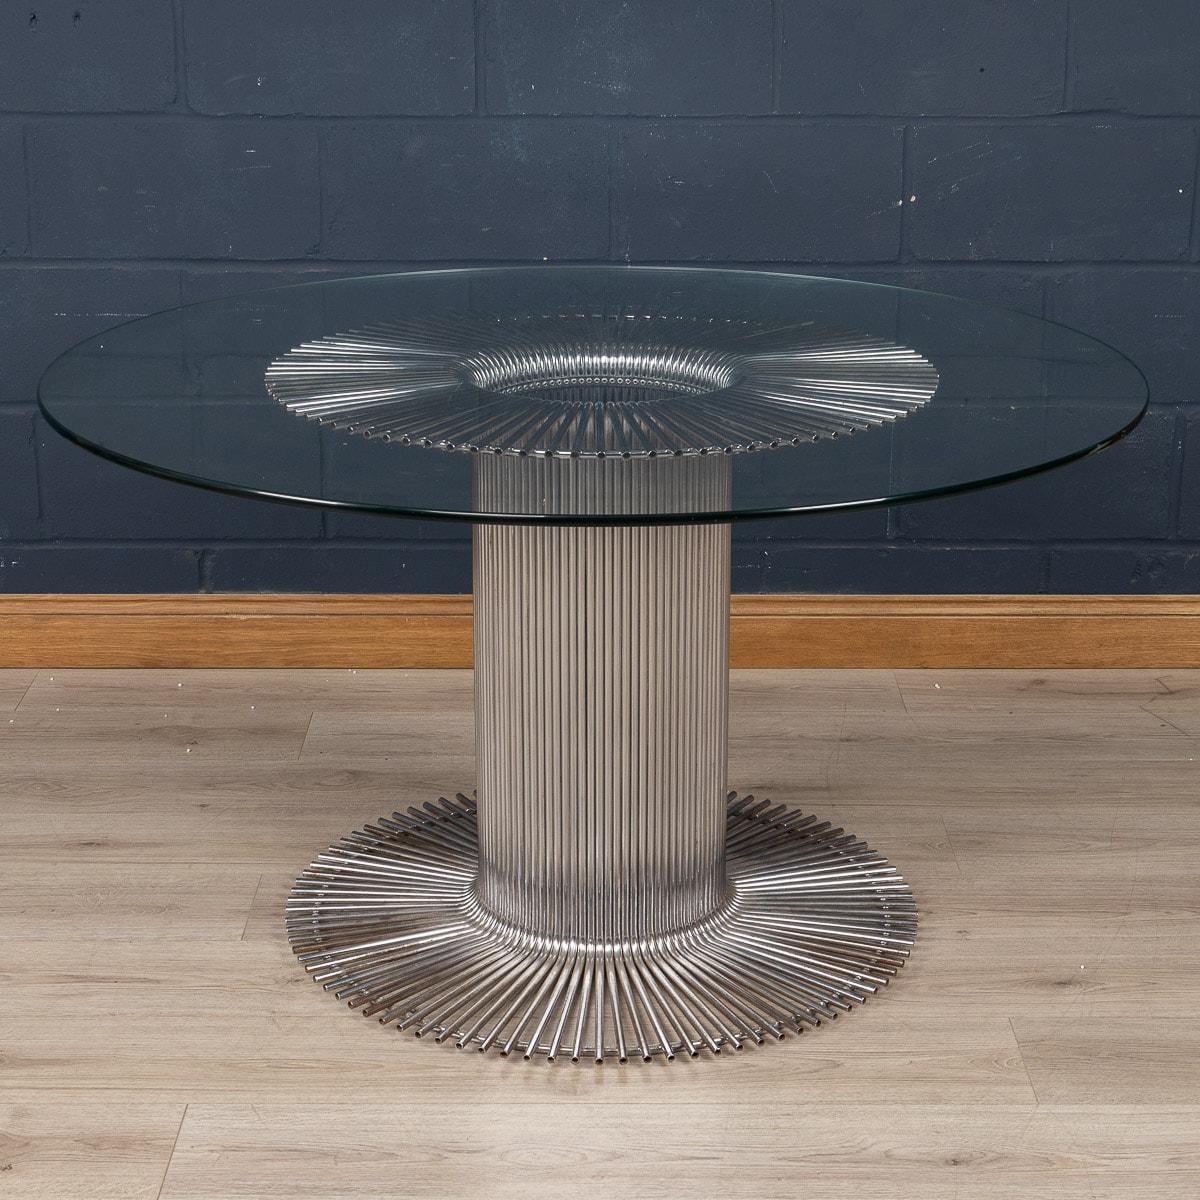 Ein eleganter Esstisch, entworfen von Gastone Rinaldi für RIMA, Italien, um 1970. Die röhrenförmige Struktur des Tisches, der für die Verbindung von Industriedesign und Kunst bekannt ist, ist ein typisches Merkmal von Rinaldis Arbeit. Dutzende von